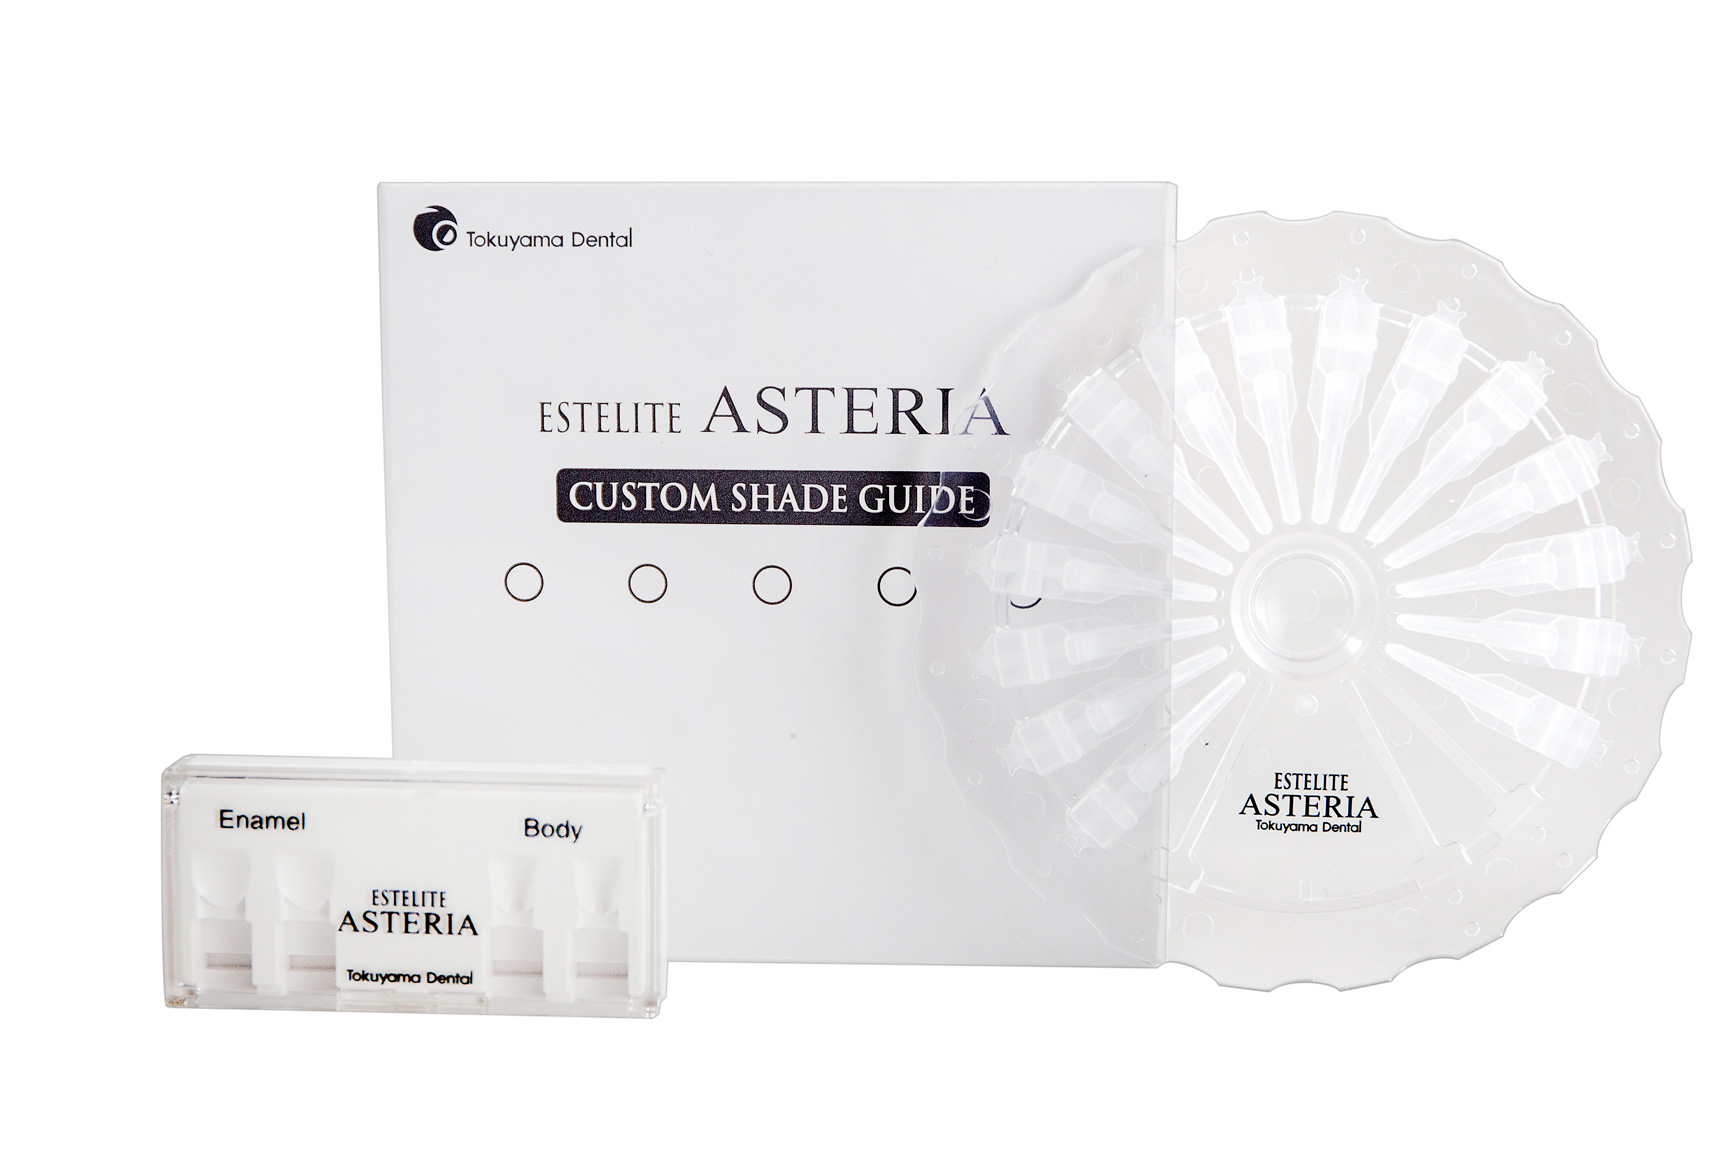 Эстелайт Астерия - шкала оттенков для эстелайт астериа, Tokuyama Dental